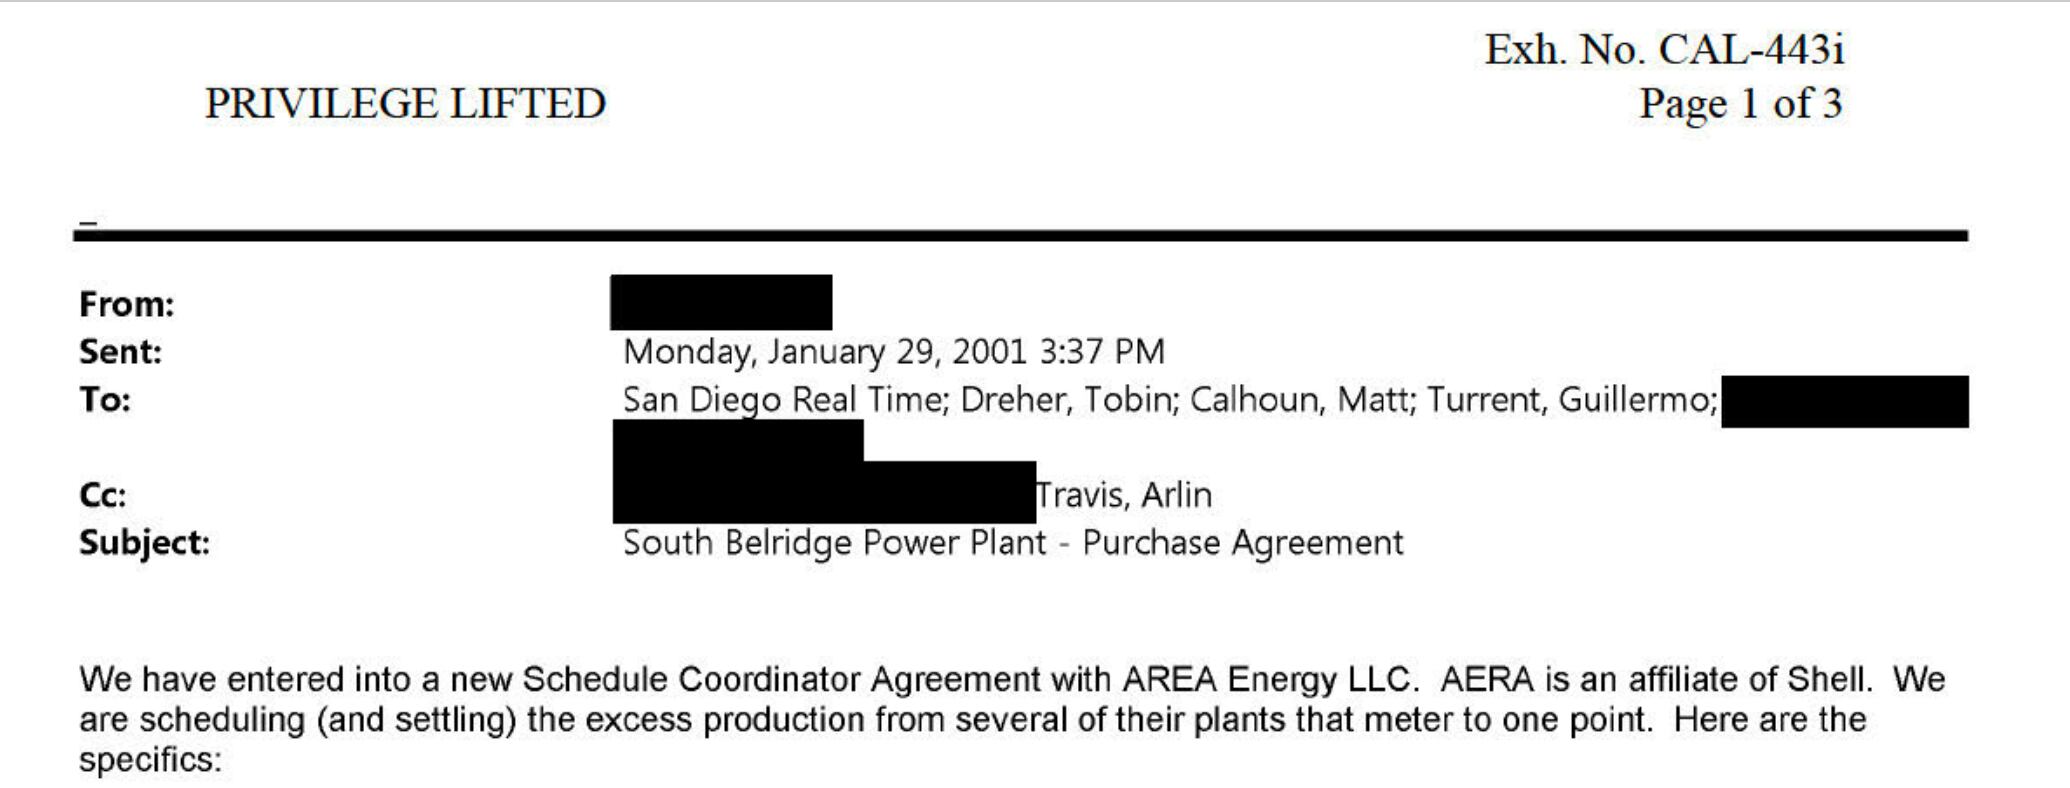 Un correo presentado como evidencia en el caso de California en contra de Shell muestra que Turrent, Travis y Calhoun trabajaron juntos durante la crisis de electricidad de California.